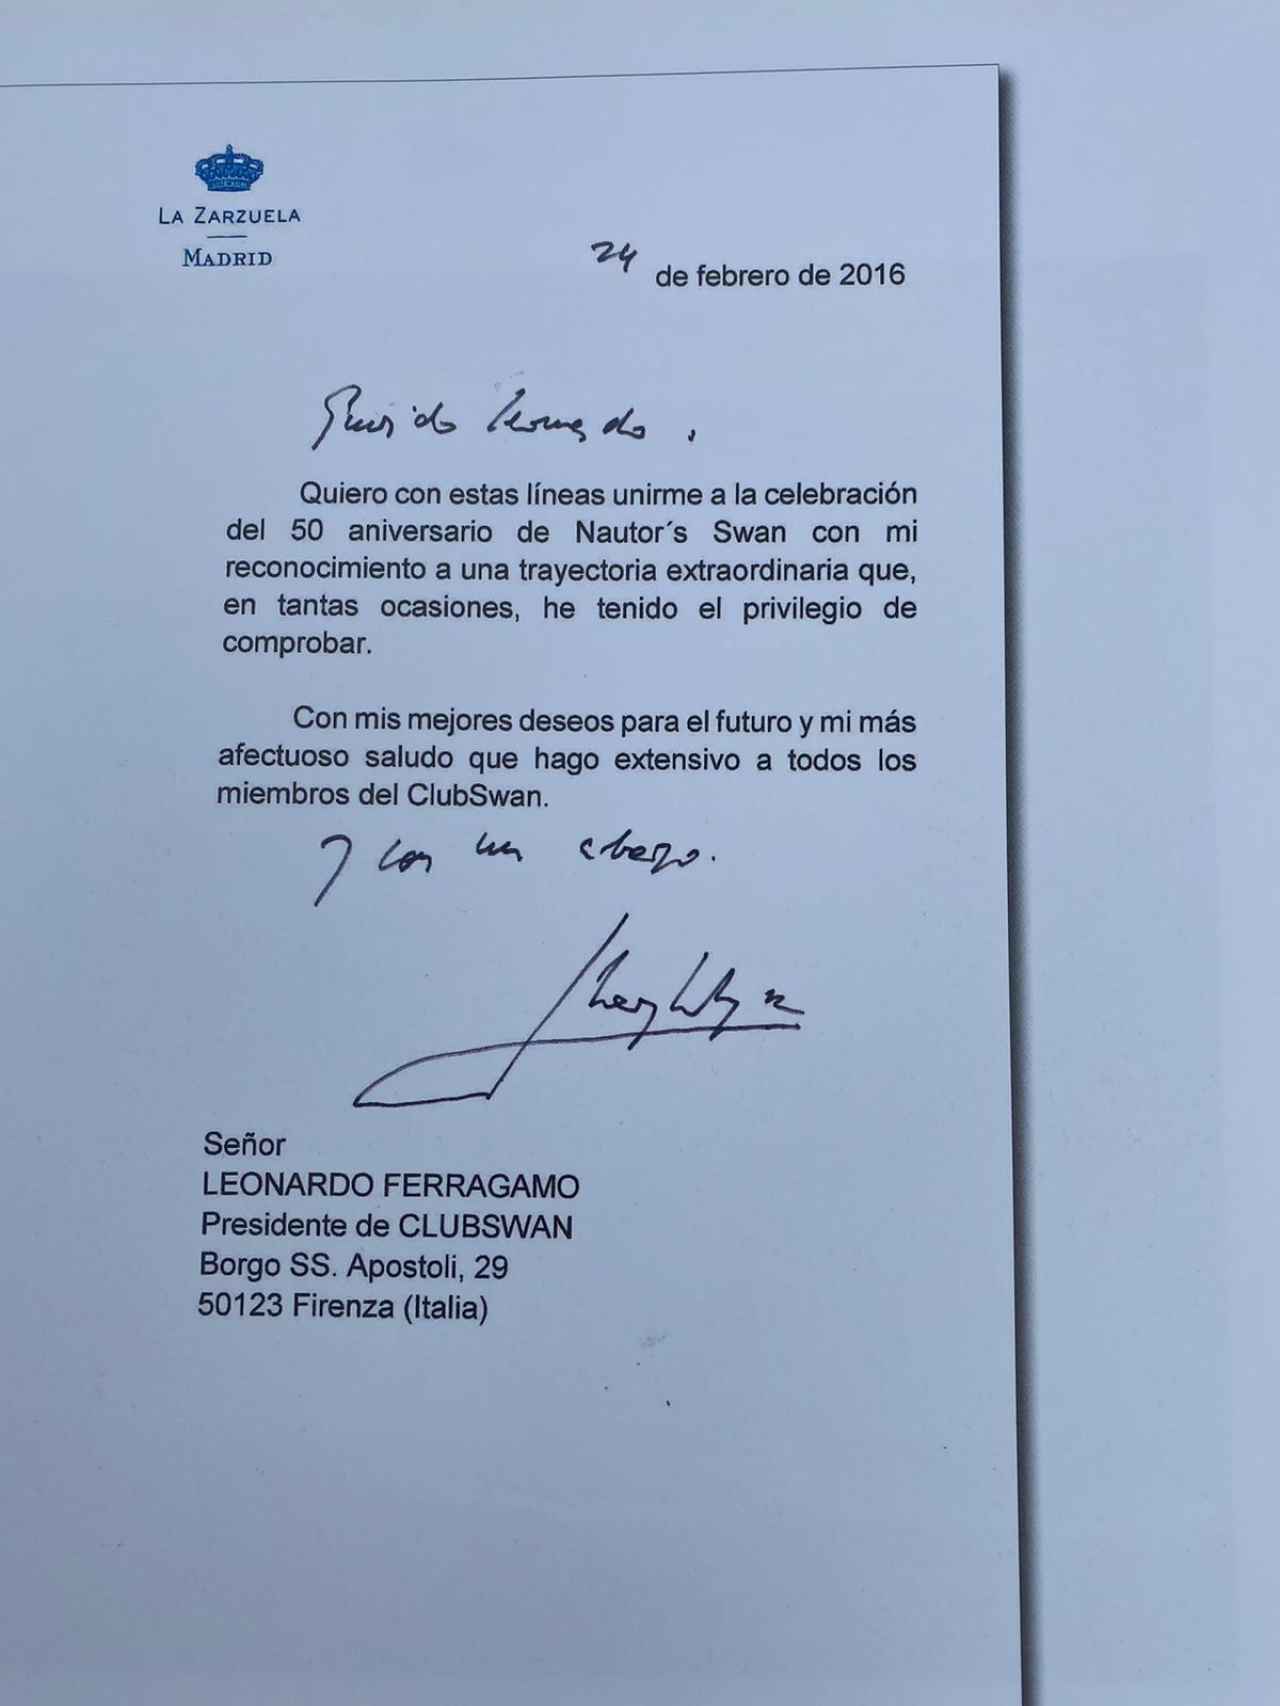 La carta que Zarzuela envió a Leonardo Ferragamo para felicitar a Swan en su aniversario.